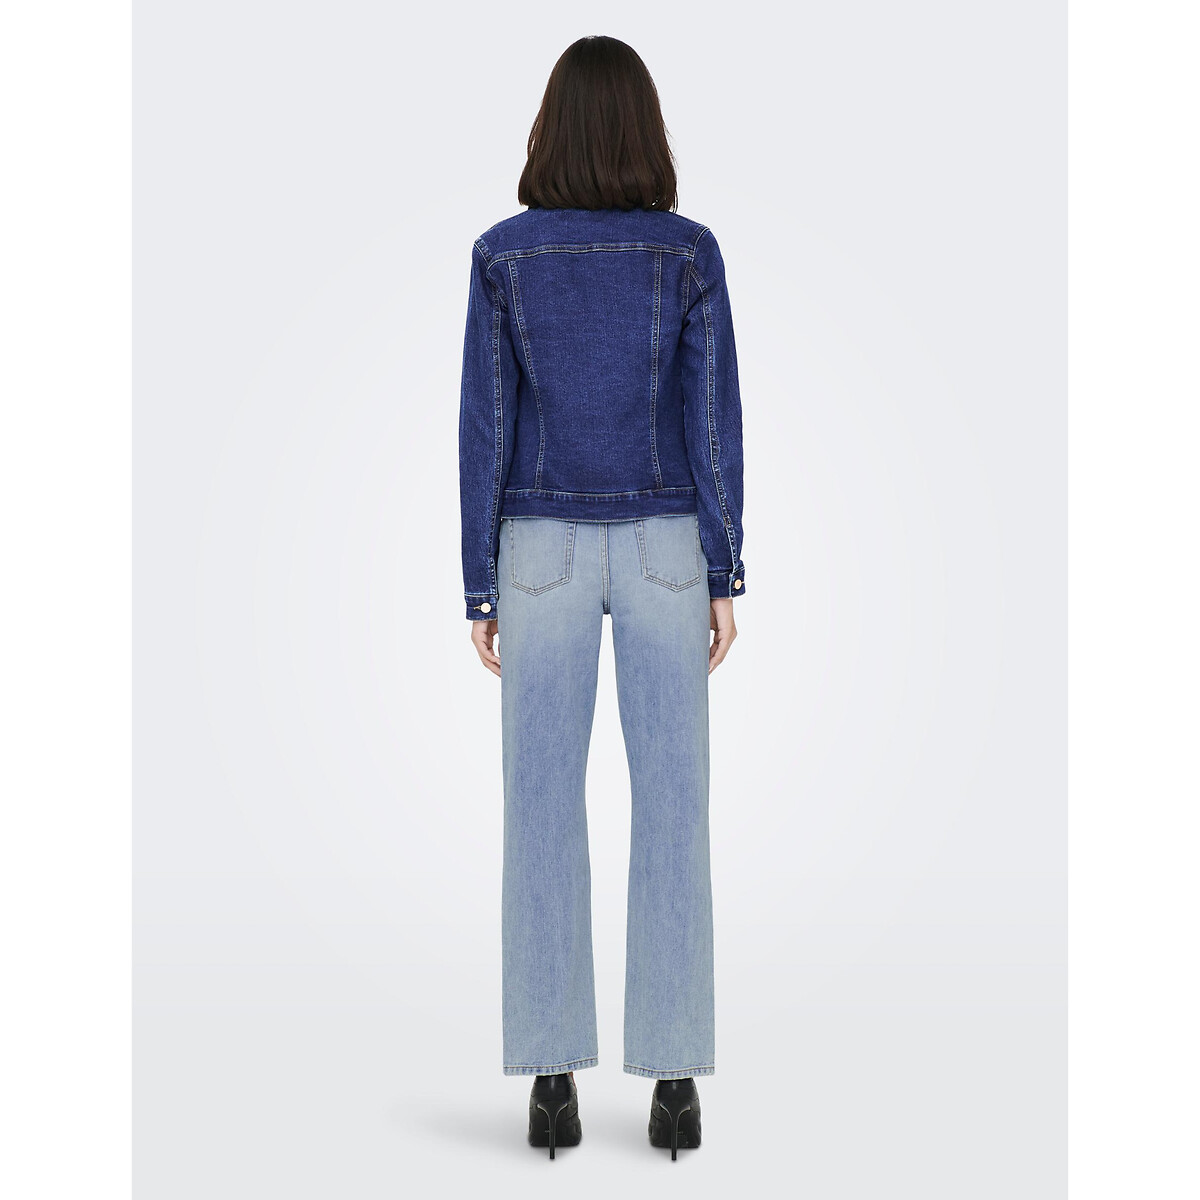 Жакет Из джинсовой ткани S синий LaRedoute, размер S - фото 4